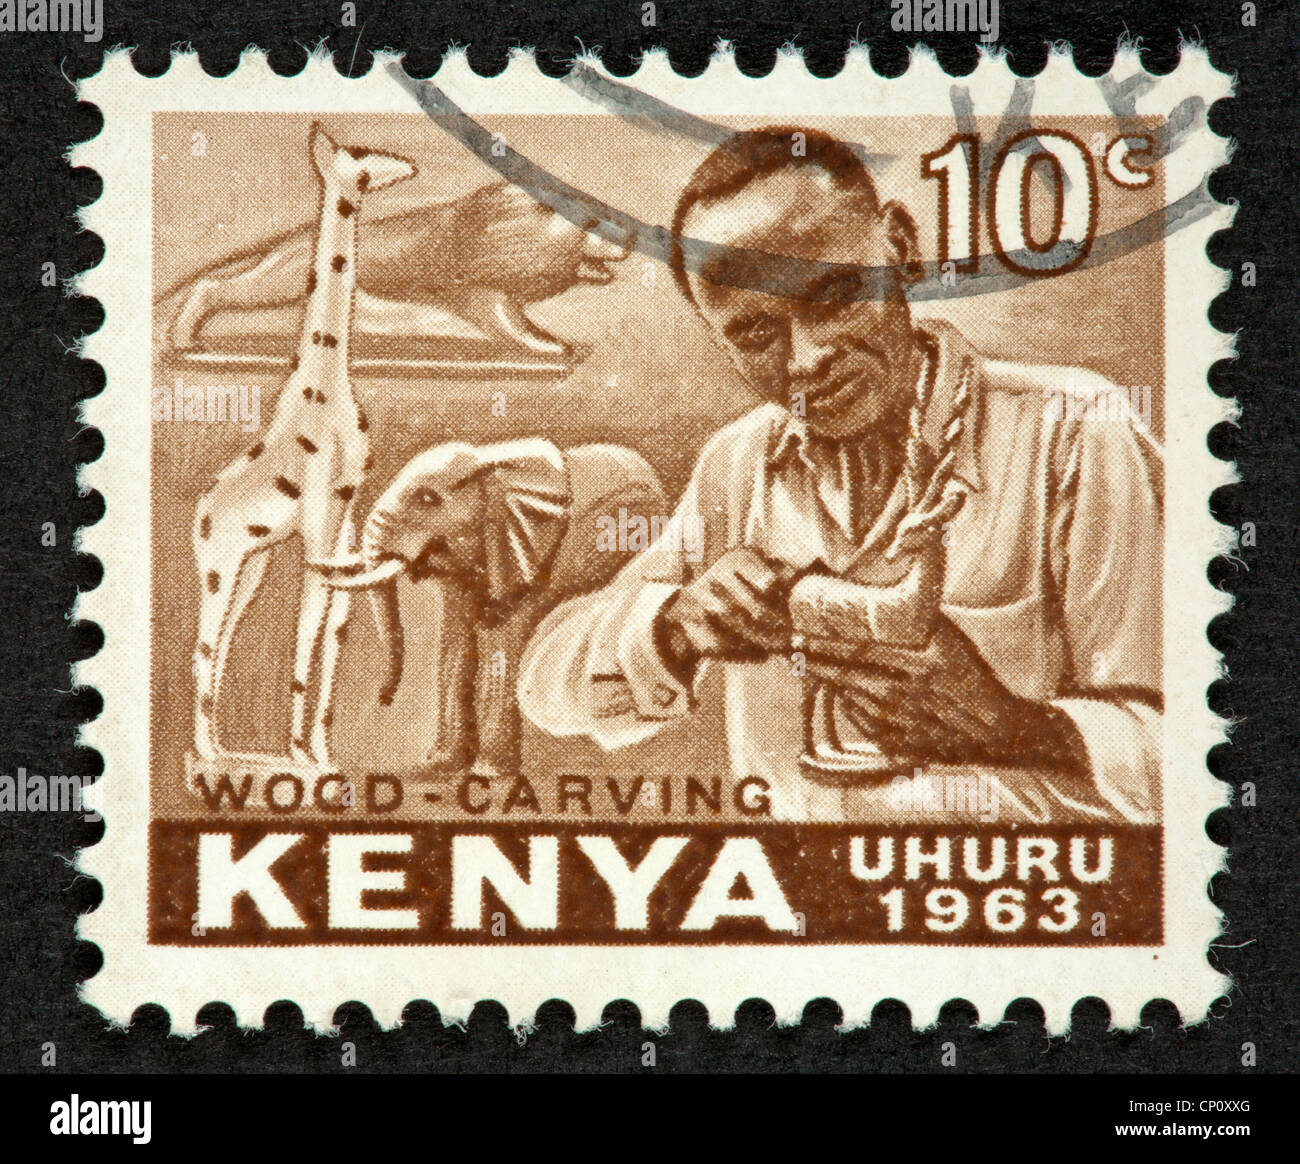 Kenyan postage stamp Stock Photo